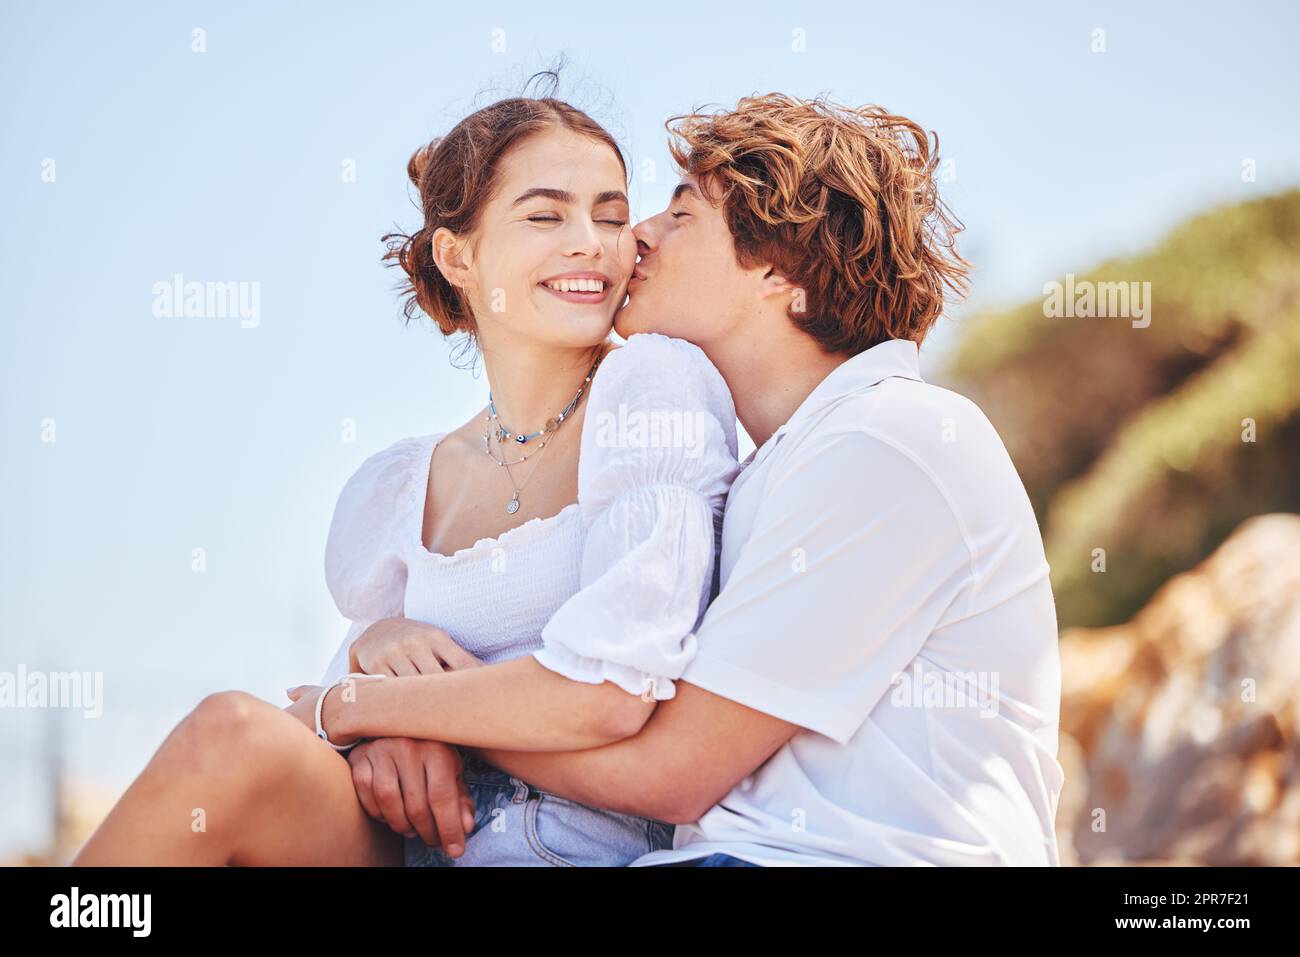 Ein Lächeln würde mir eine Sommerbrise durchs Herz blasen. Aufnahme eines jungen Paares, das Zeit am Strand verbringt. Stockfoto